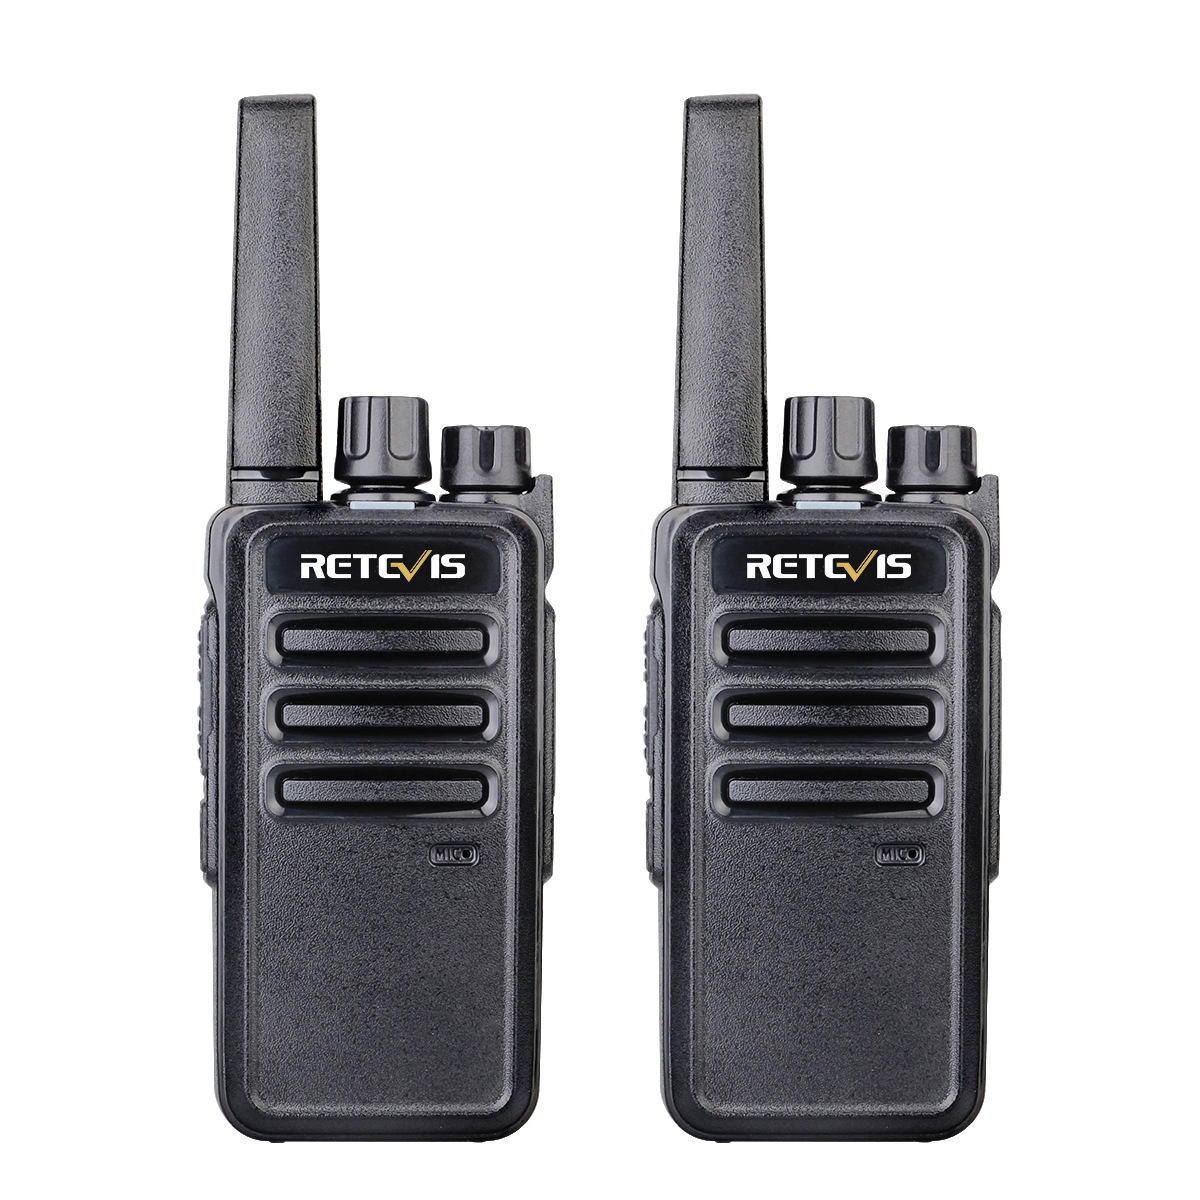 2 STKS Retevis RT68 16 Kanalen Frequentie 462 MHz Mini Ultra Light Handheld Radio Walkie Talkie Inte